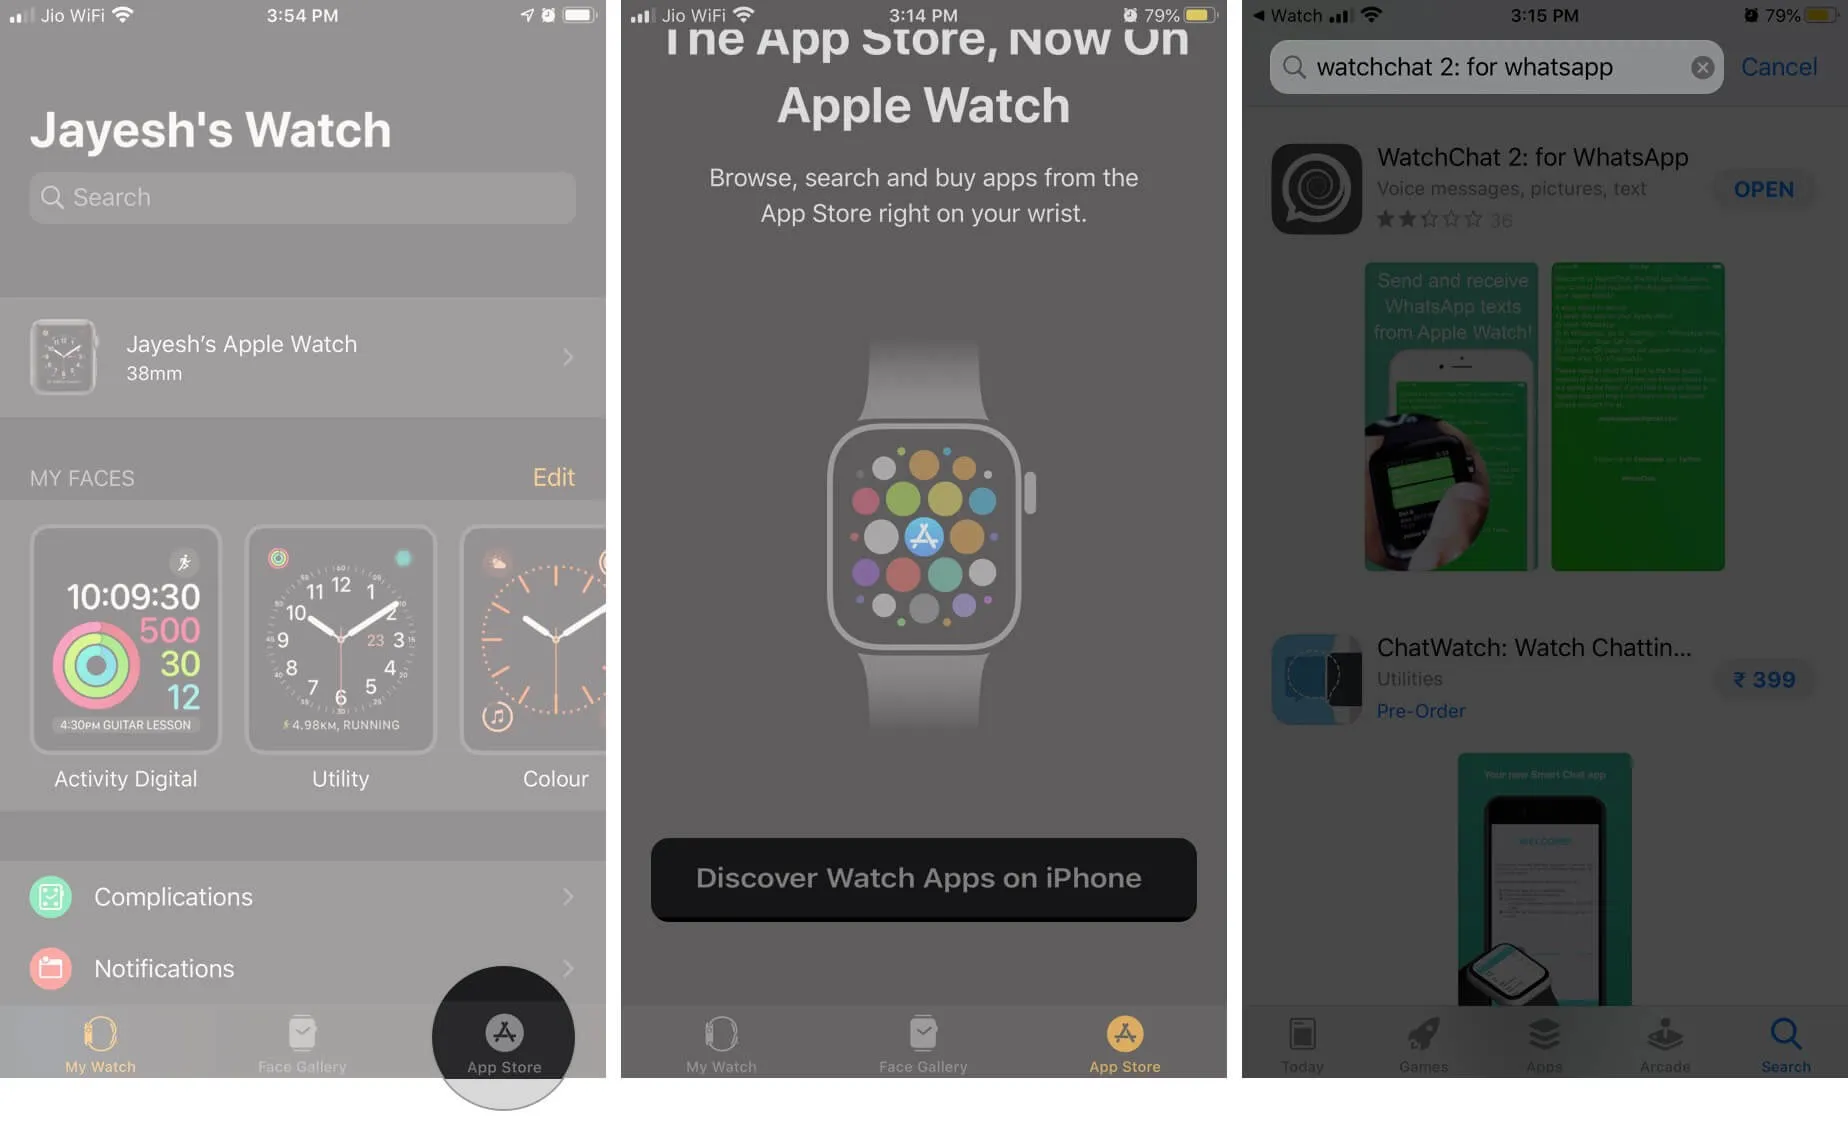 打開 Watch 應用並選擇 App Store，然後點擊“在 iPhone 上發現 Watch 應用”並蒐索 WatchChat 2